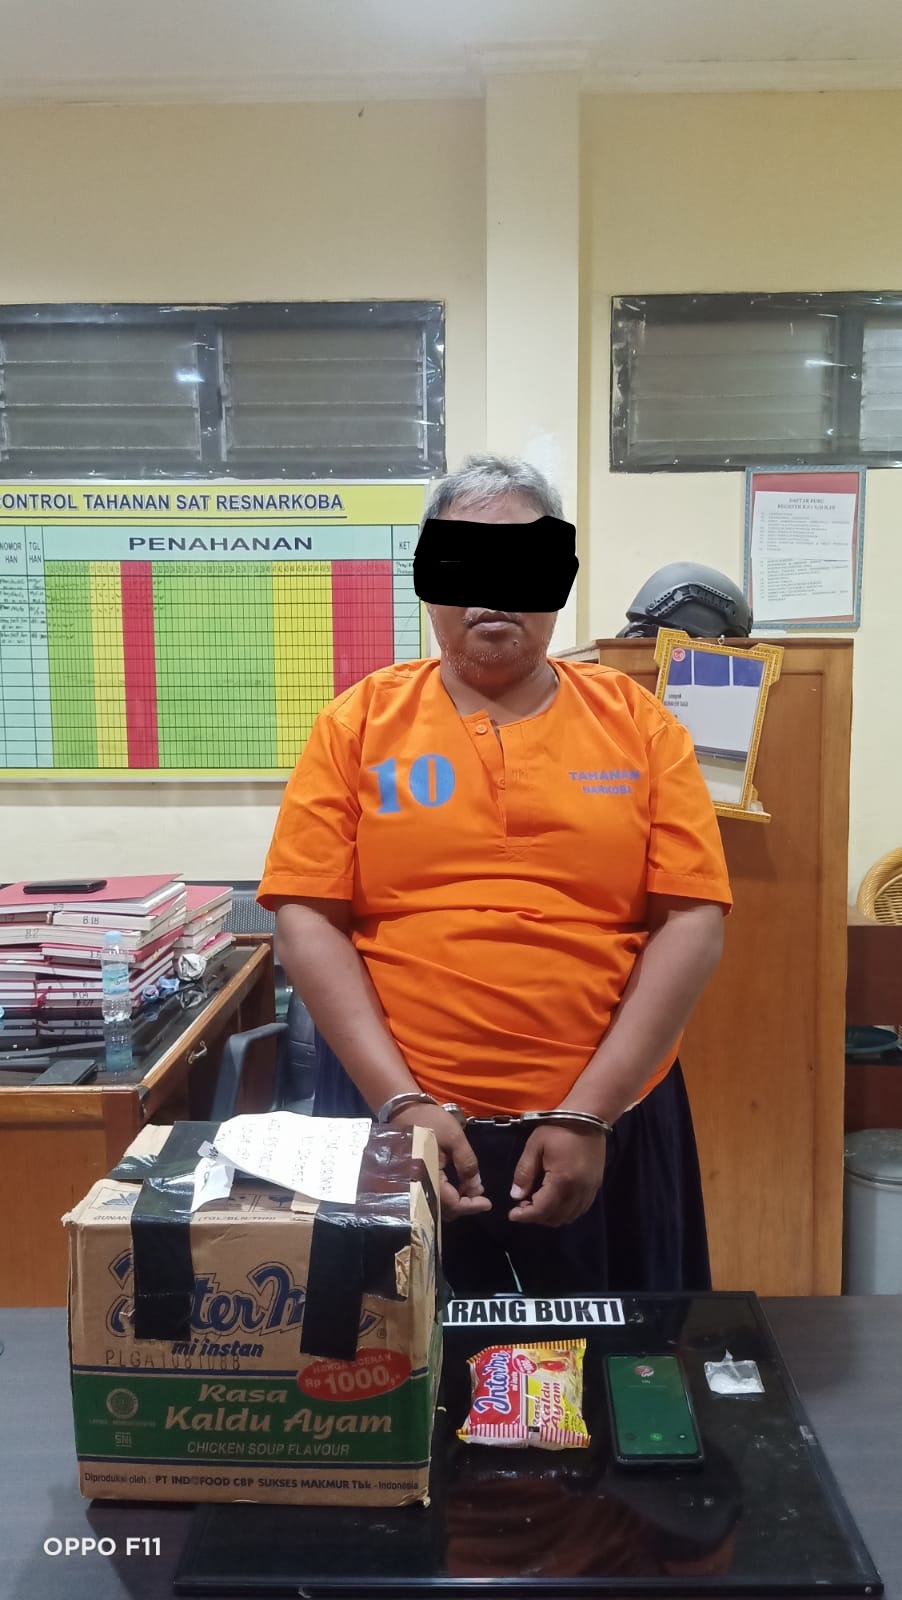 Terkait Paket Sabu, Warga Nusa Indah Diamankan Polres Bengkulu